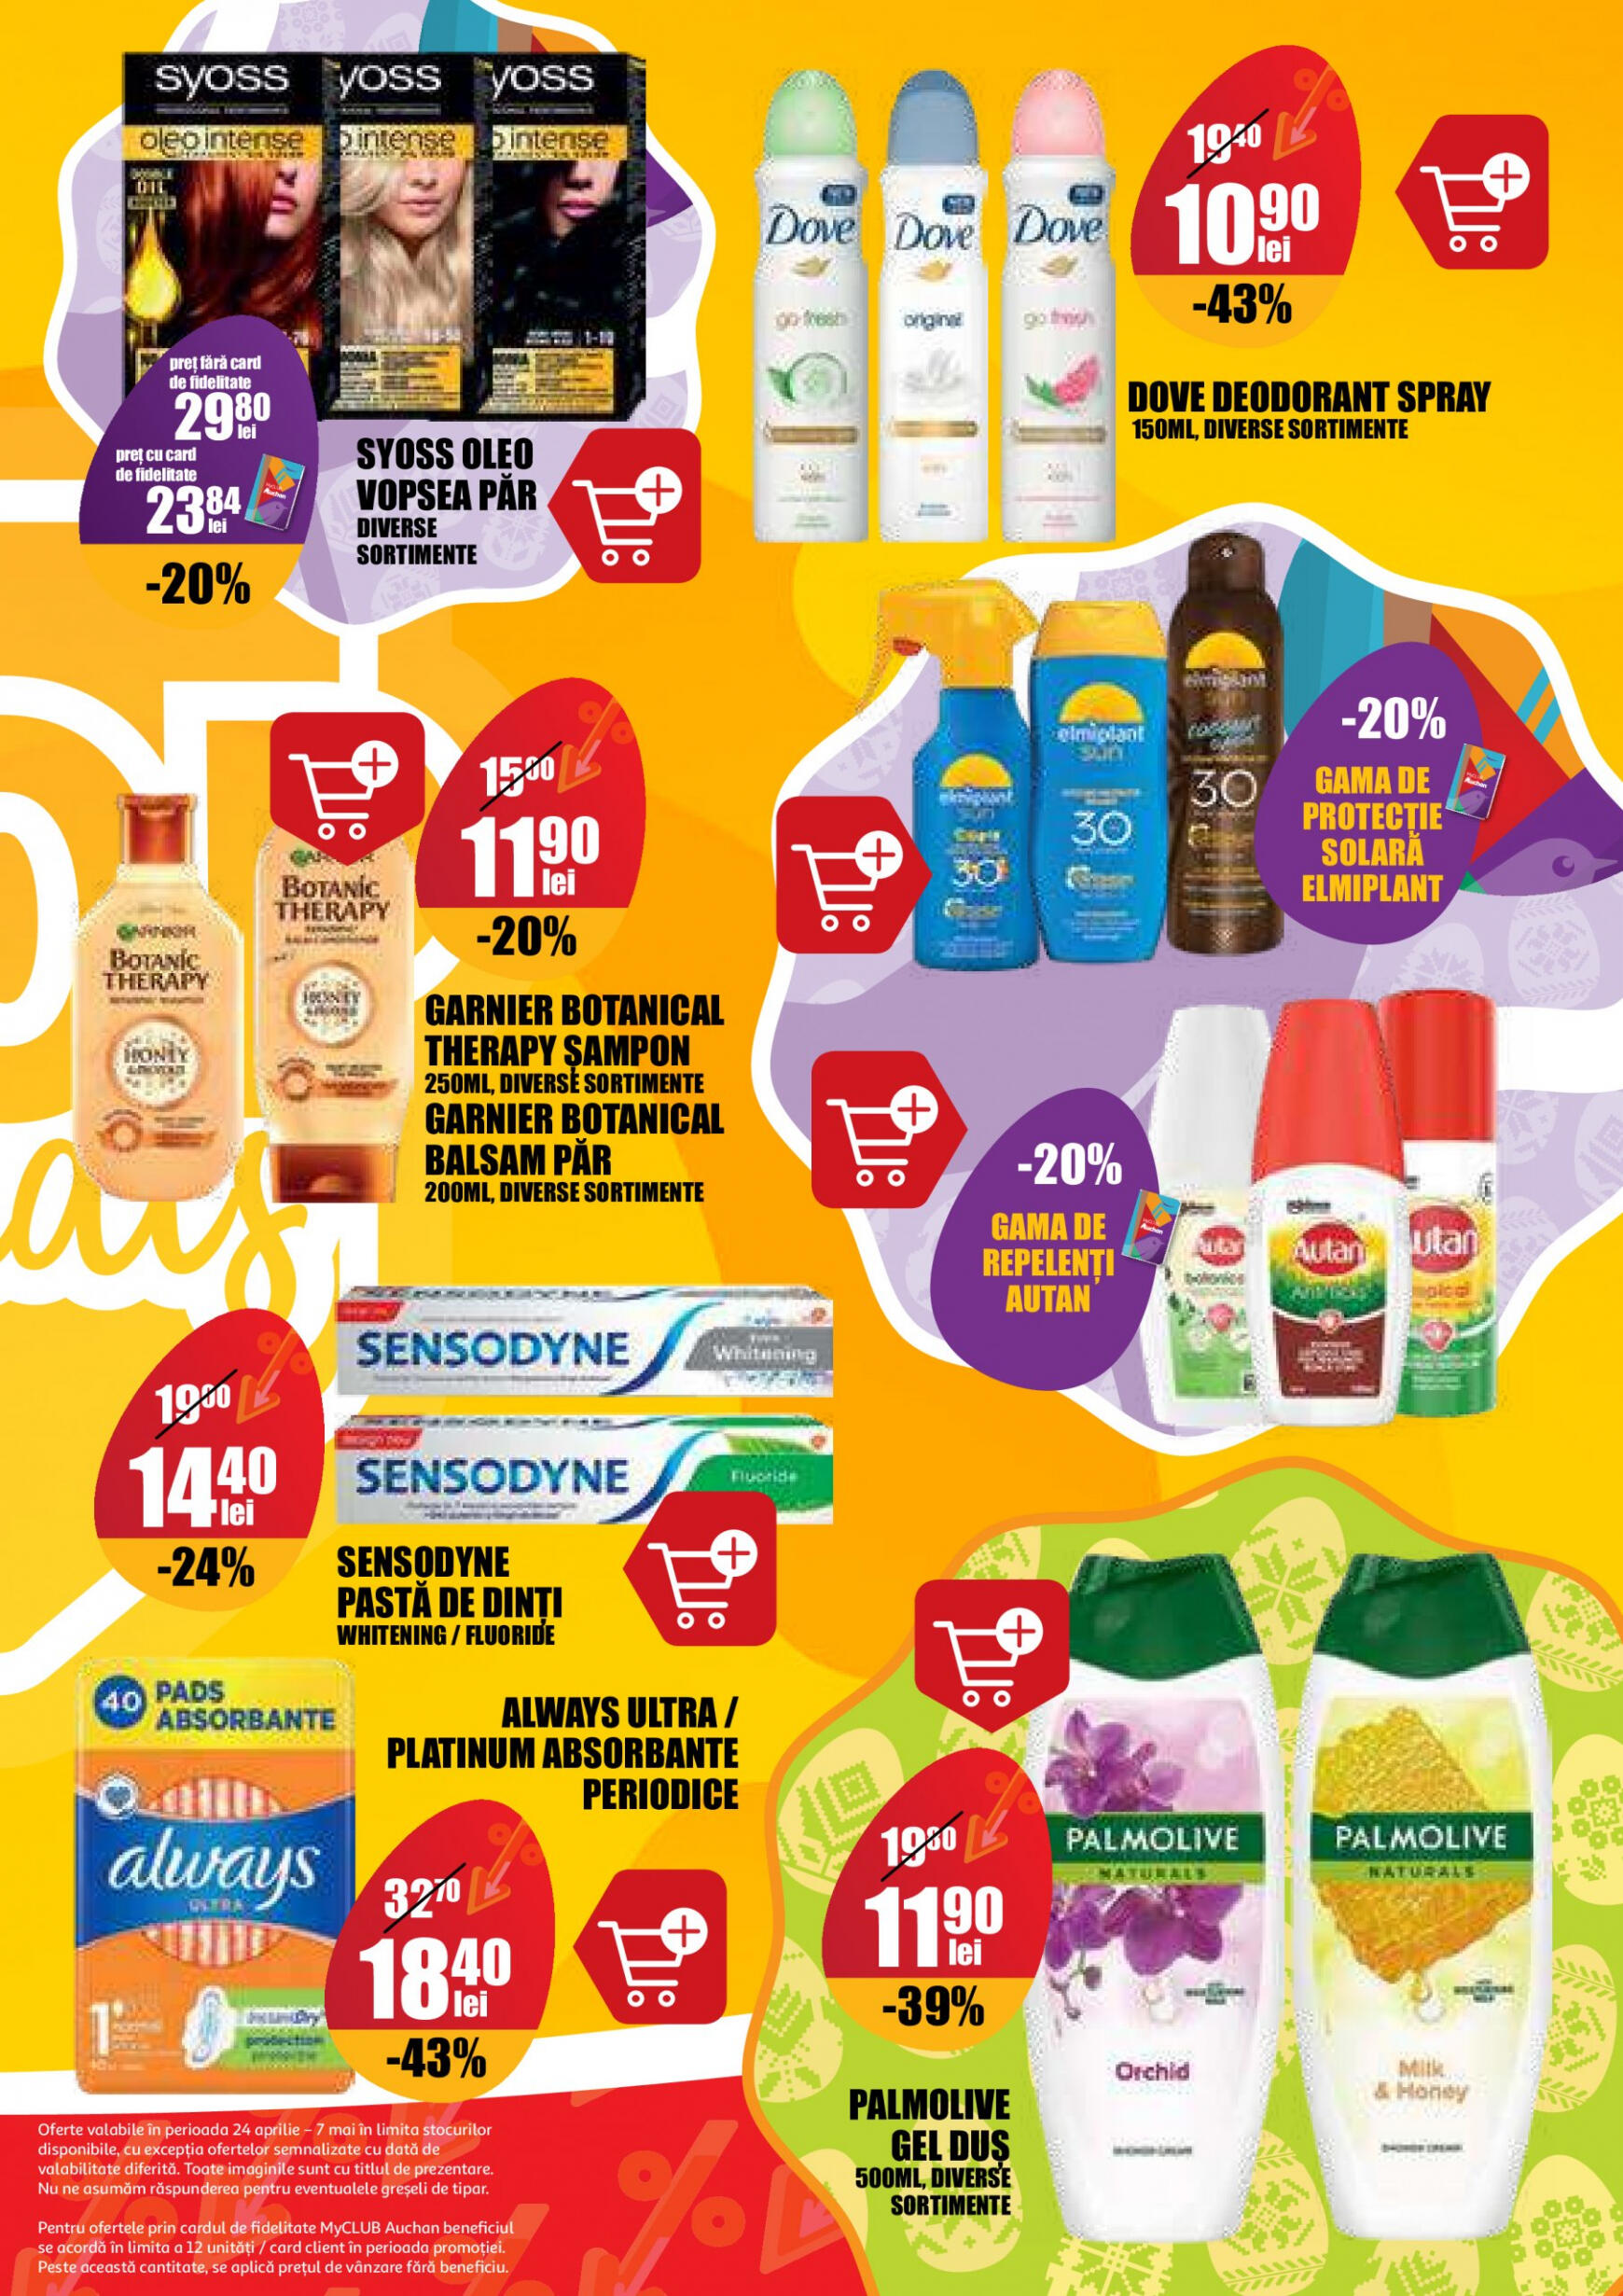 auchan - Catalog nou Auchan 24.04. - 07.05. - page: 23